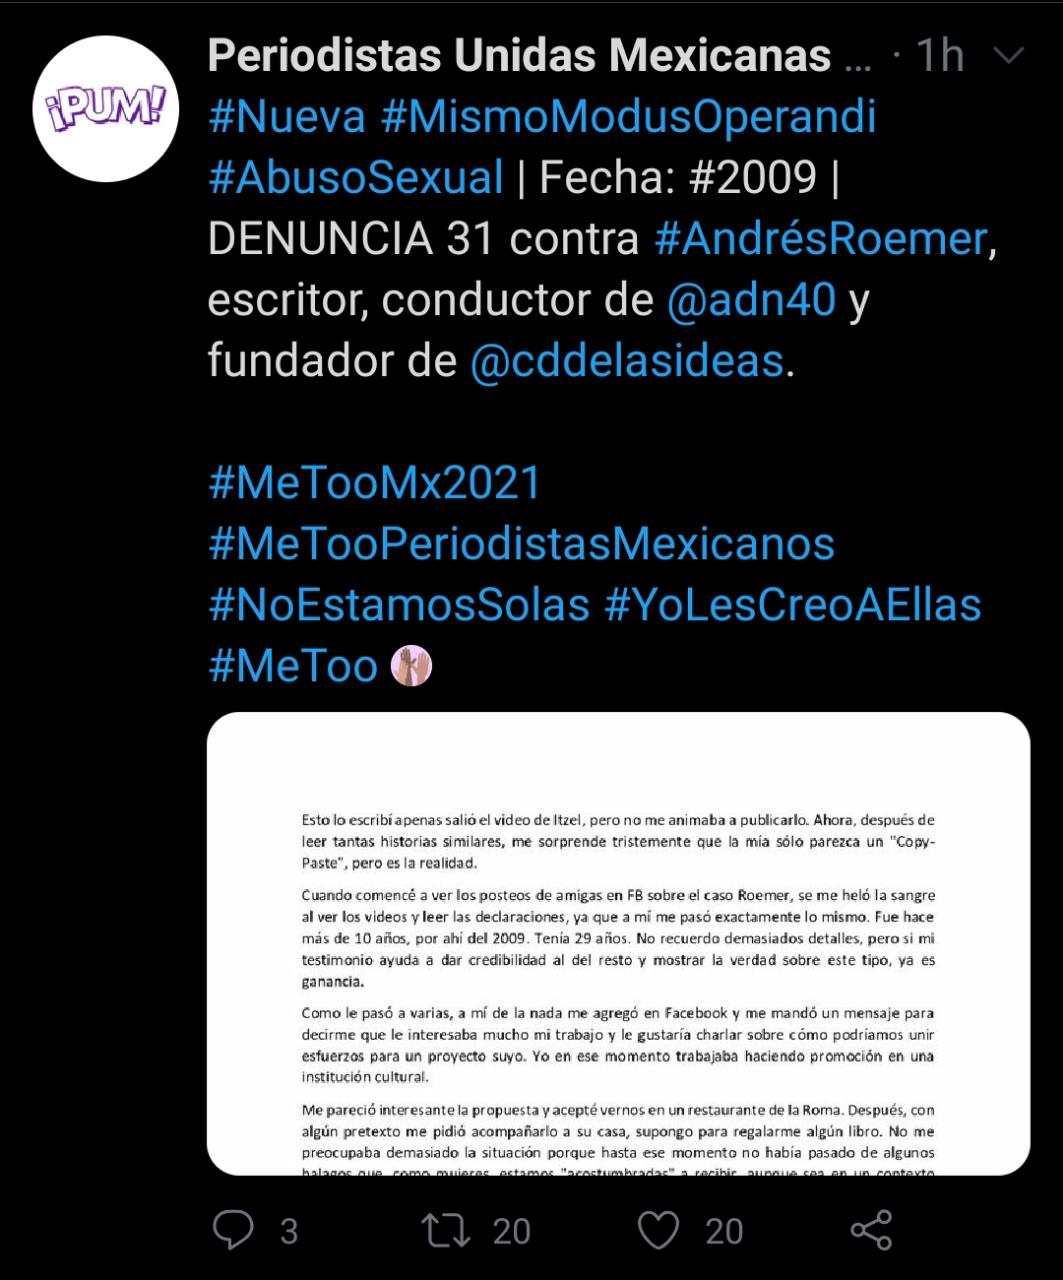  Periodistas Unidas Mexicanas han reunido acusaciones contra el conductor de TV Azteca desde hace varios años, algunas datan del año 2006. (Foto: Twitter/@PeriodistasPUM)